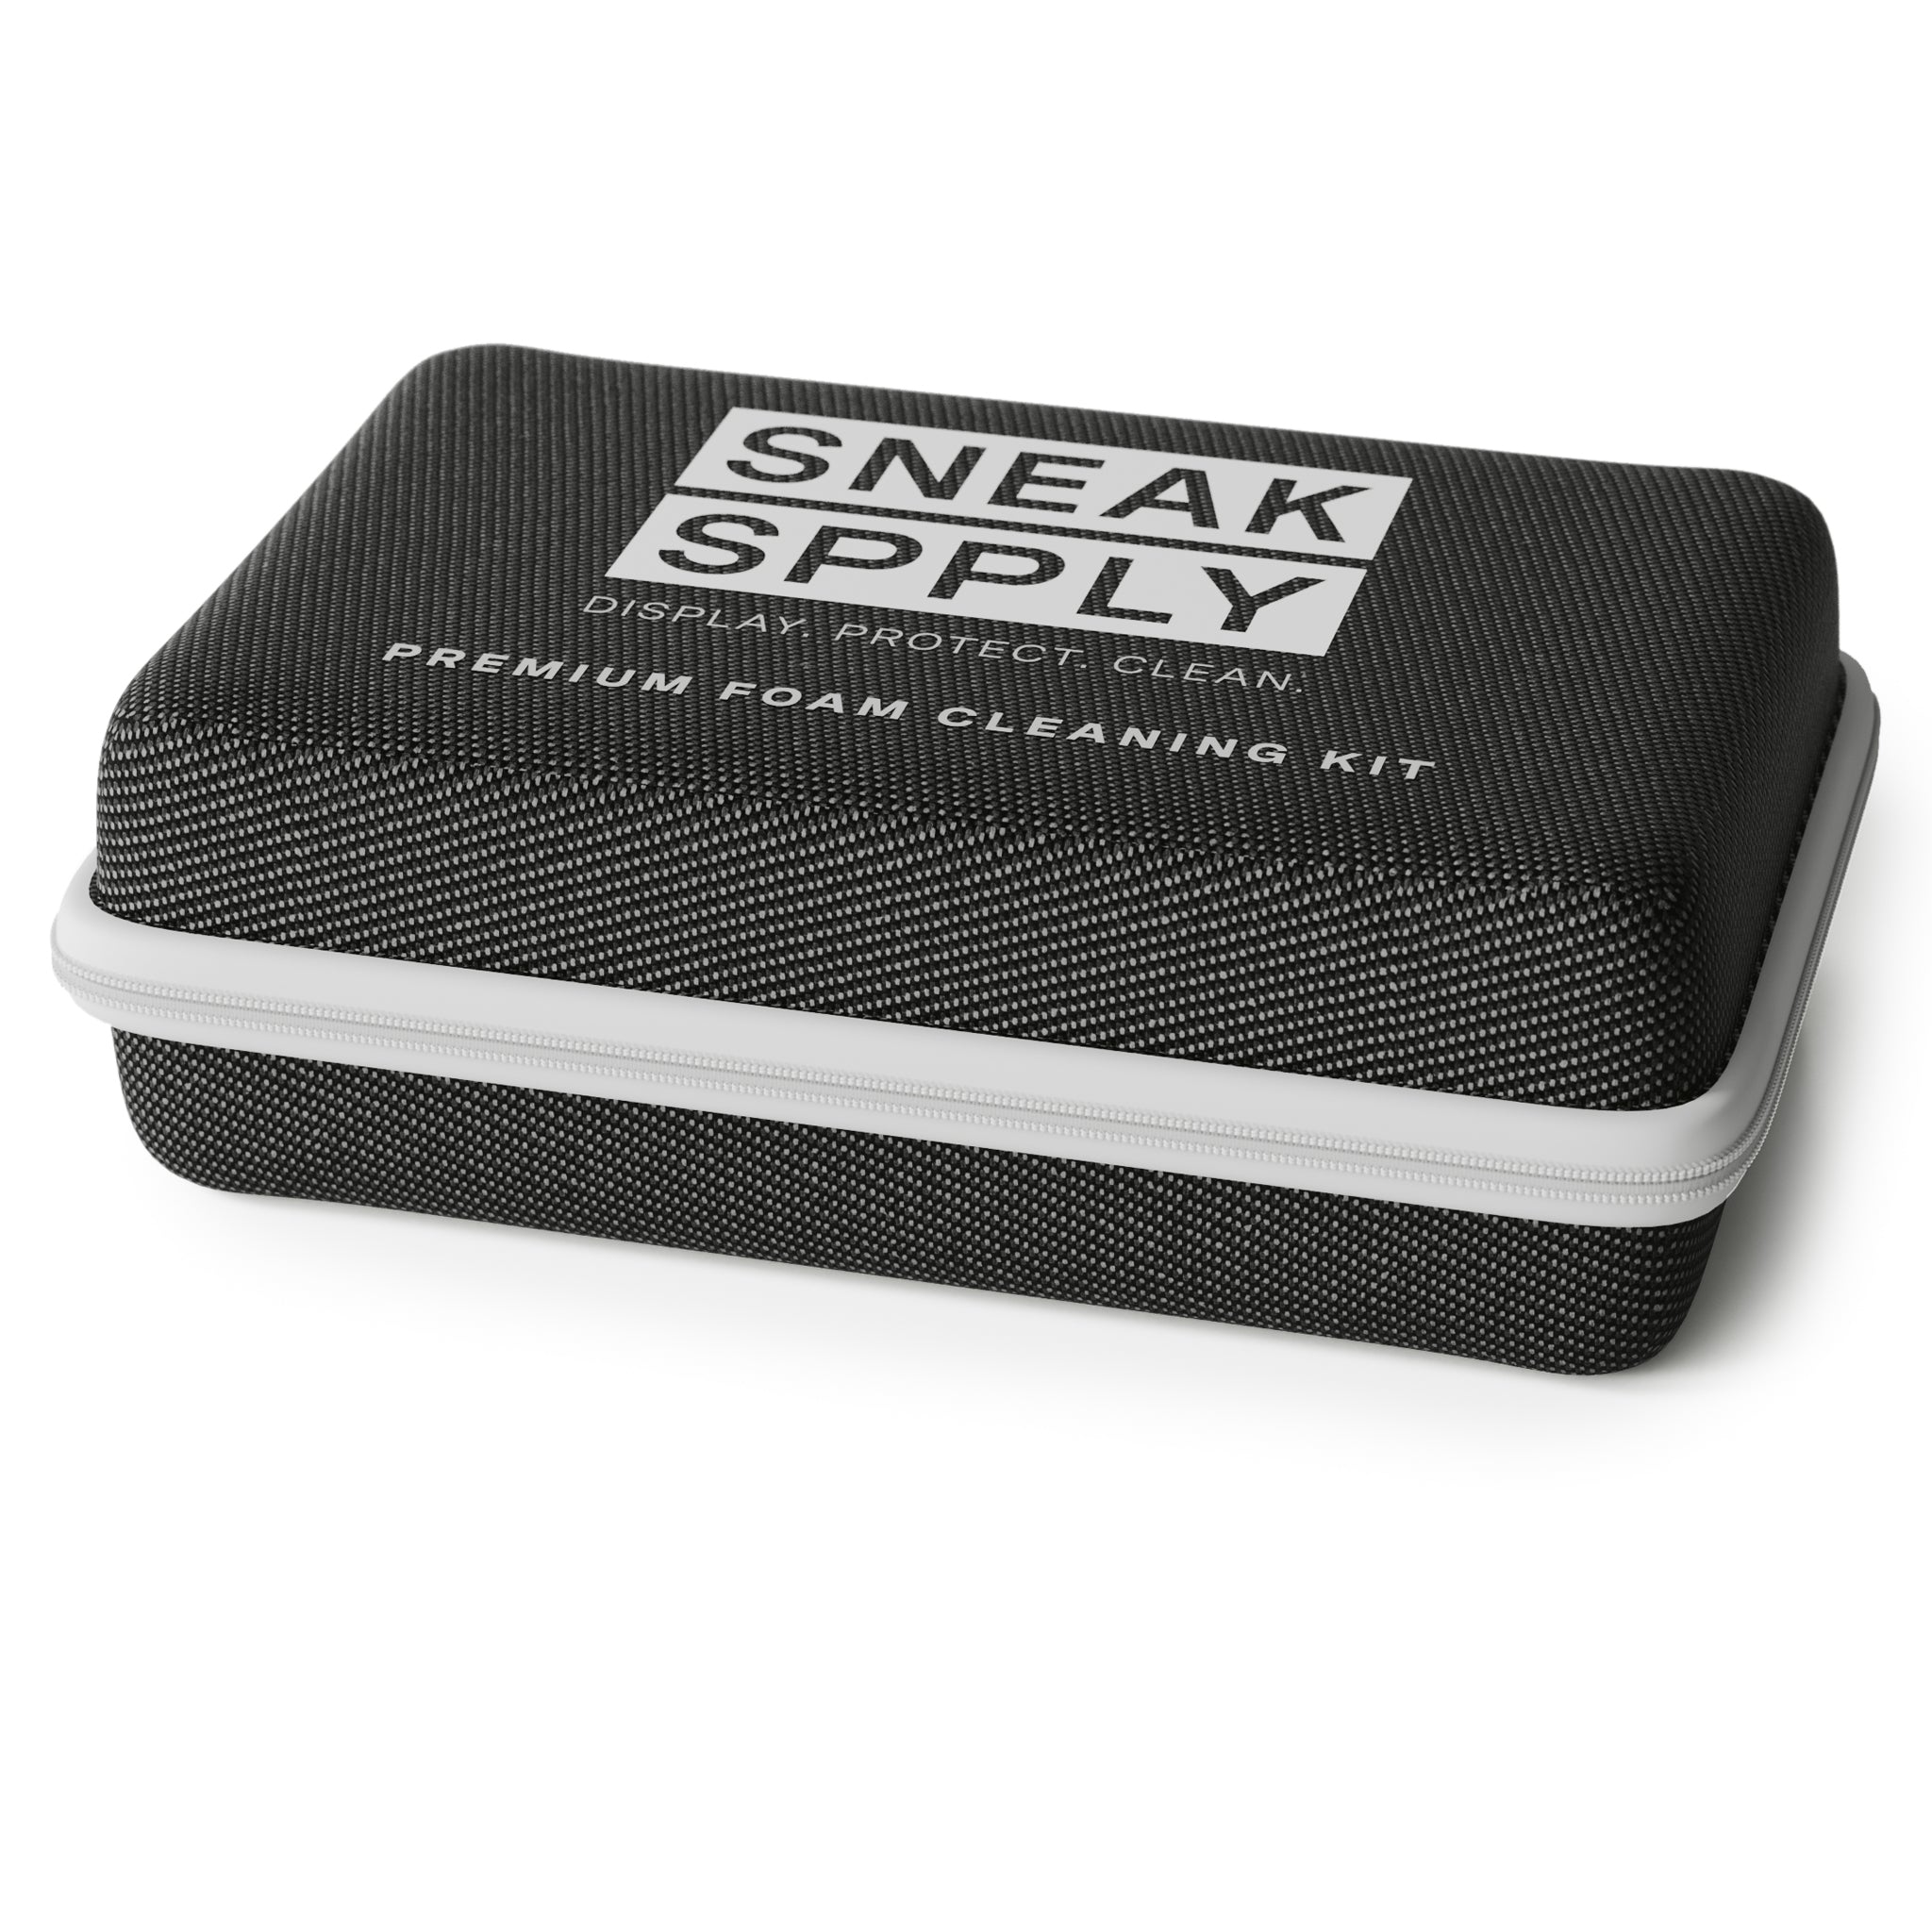 box of Sneak Spply Cleaning Kit